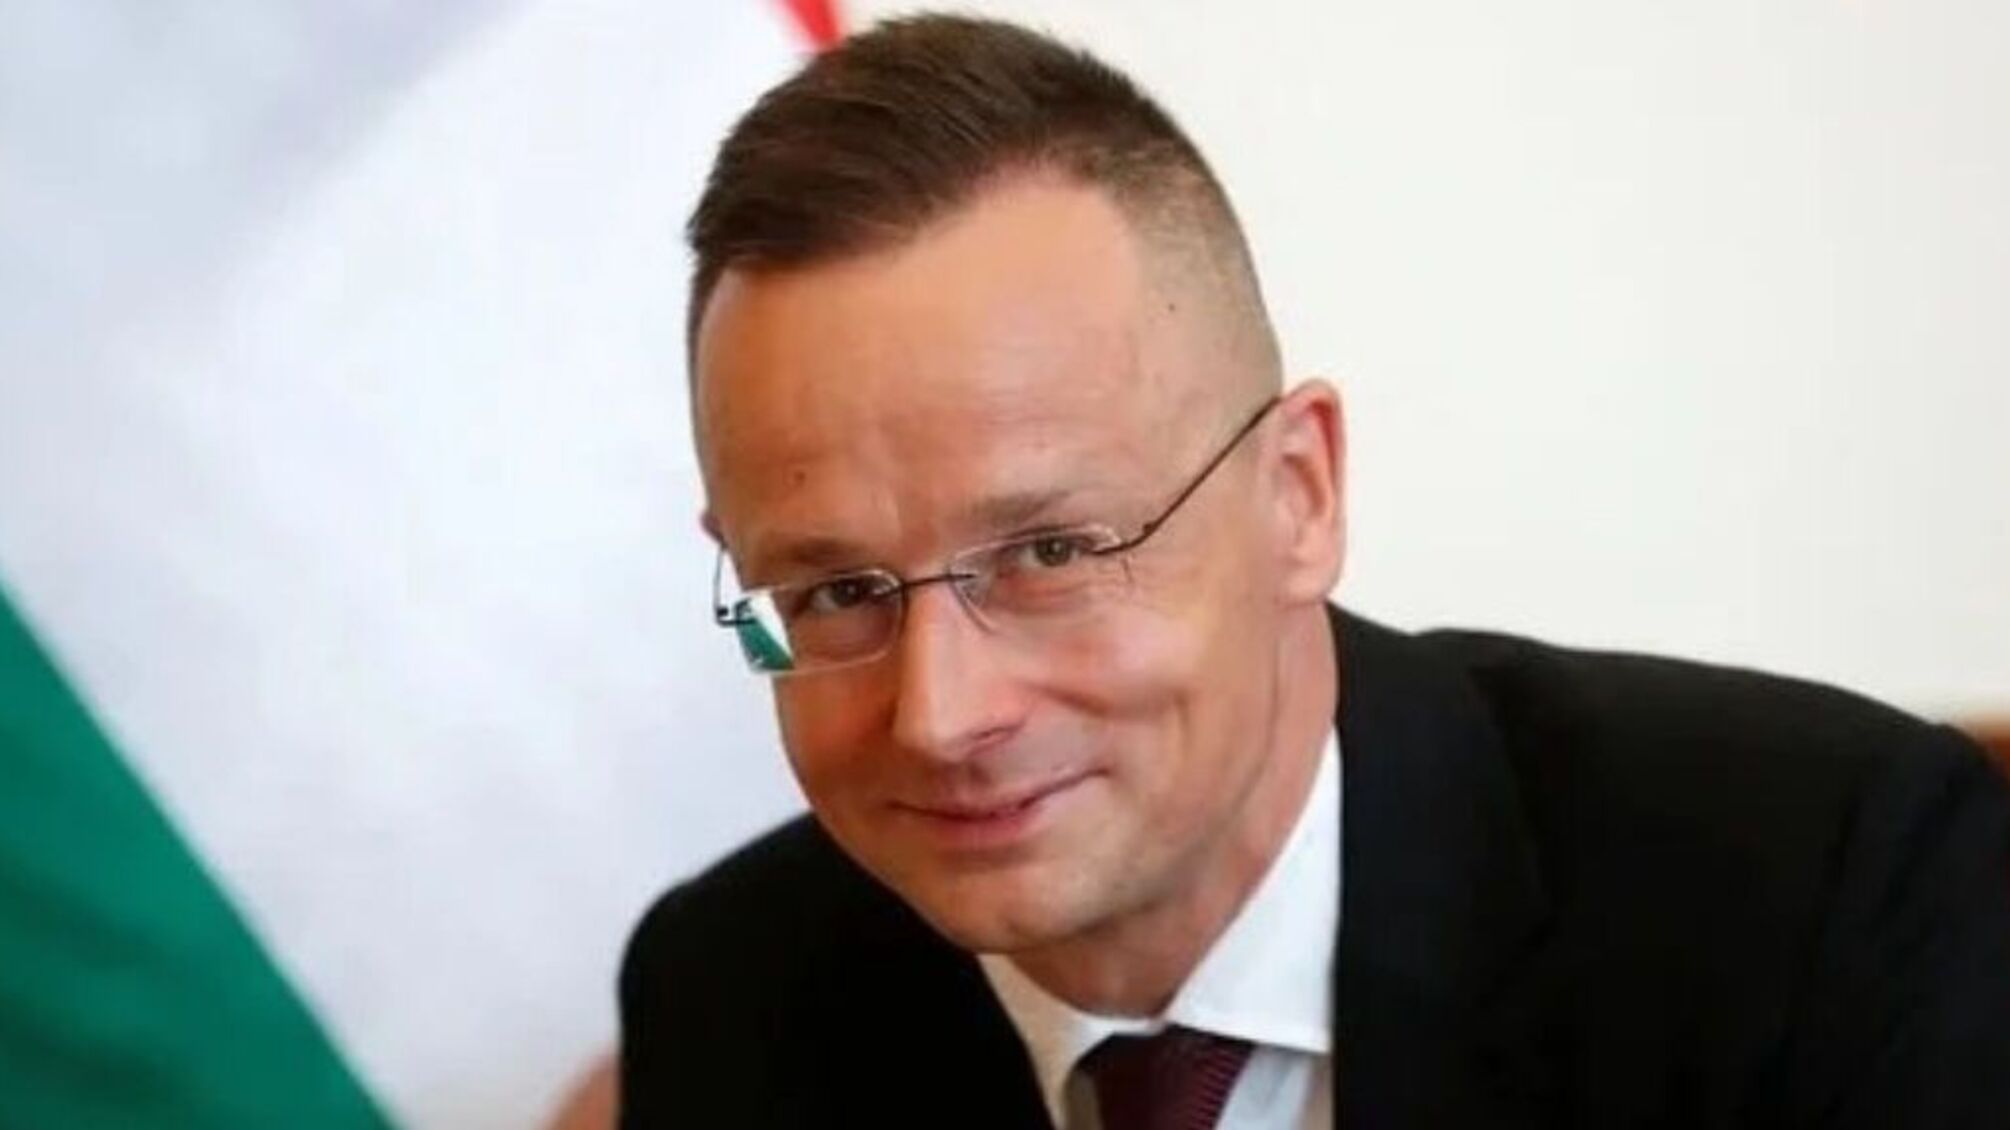 Глава МИД Венгрии получил письмо с угрозами на украинском языке 